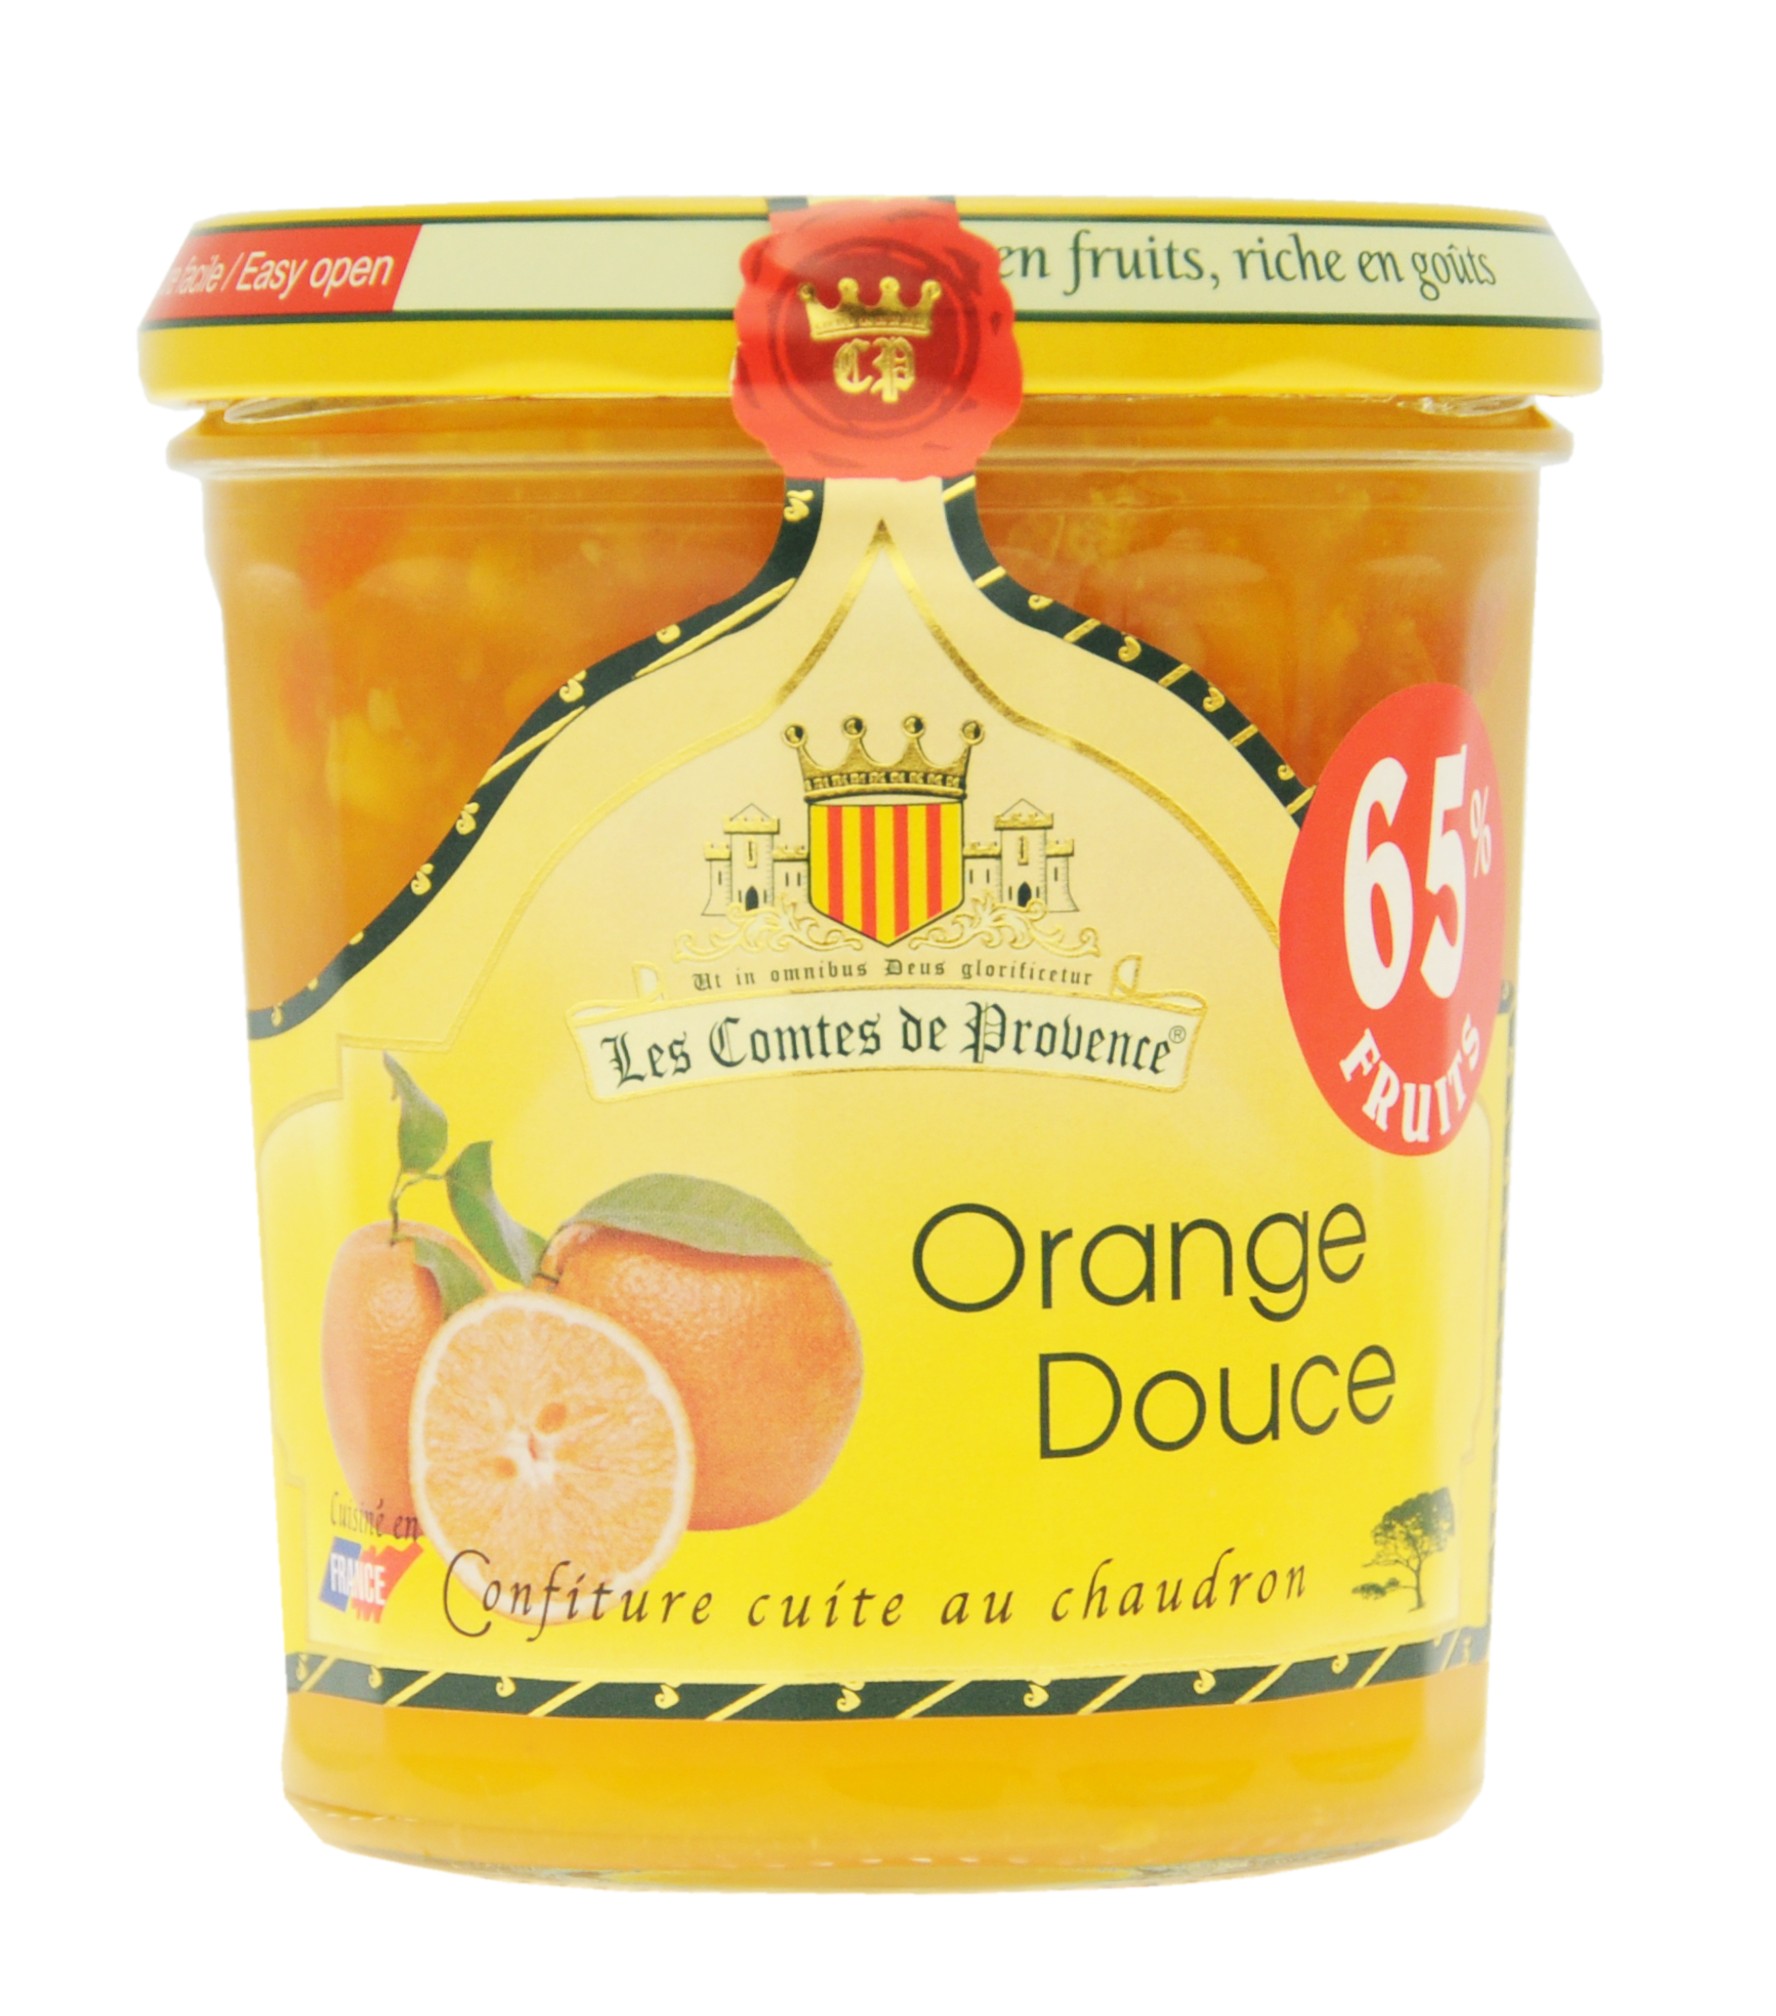 Gem de portocale dulci